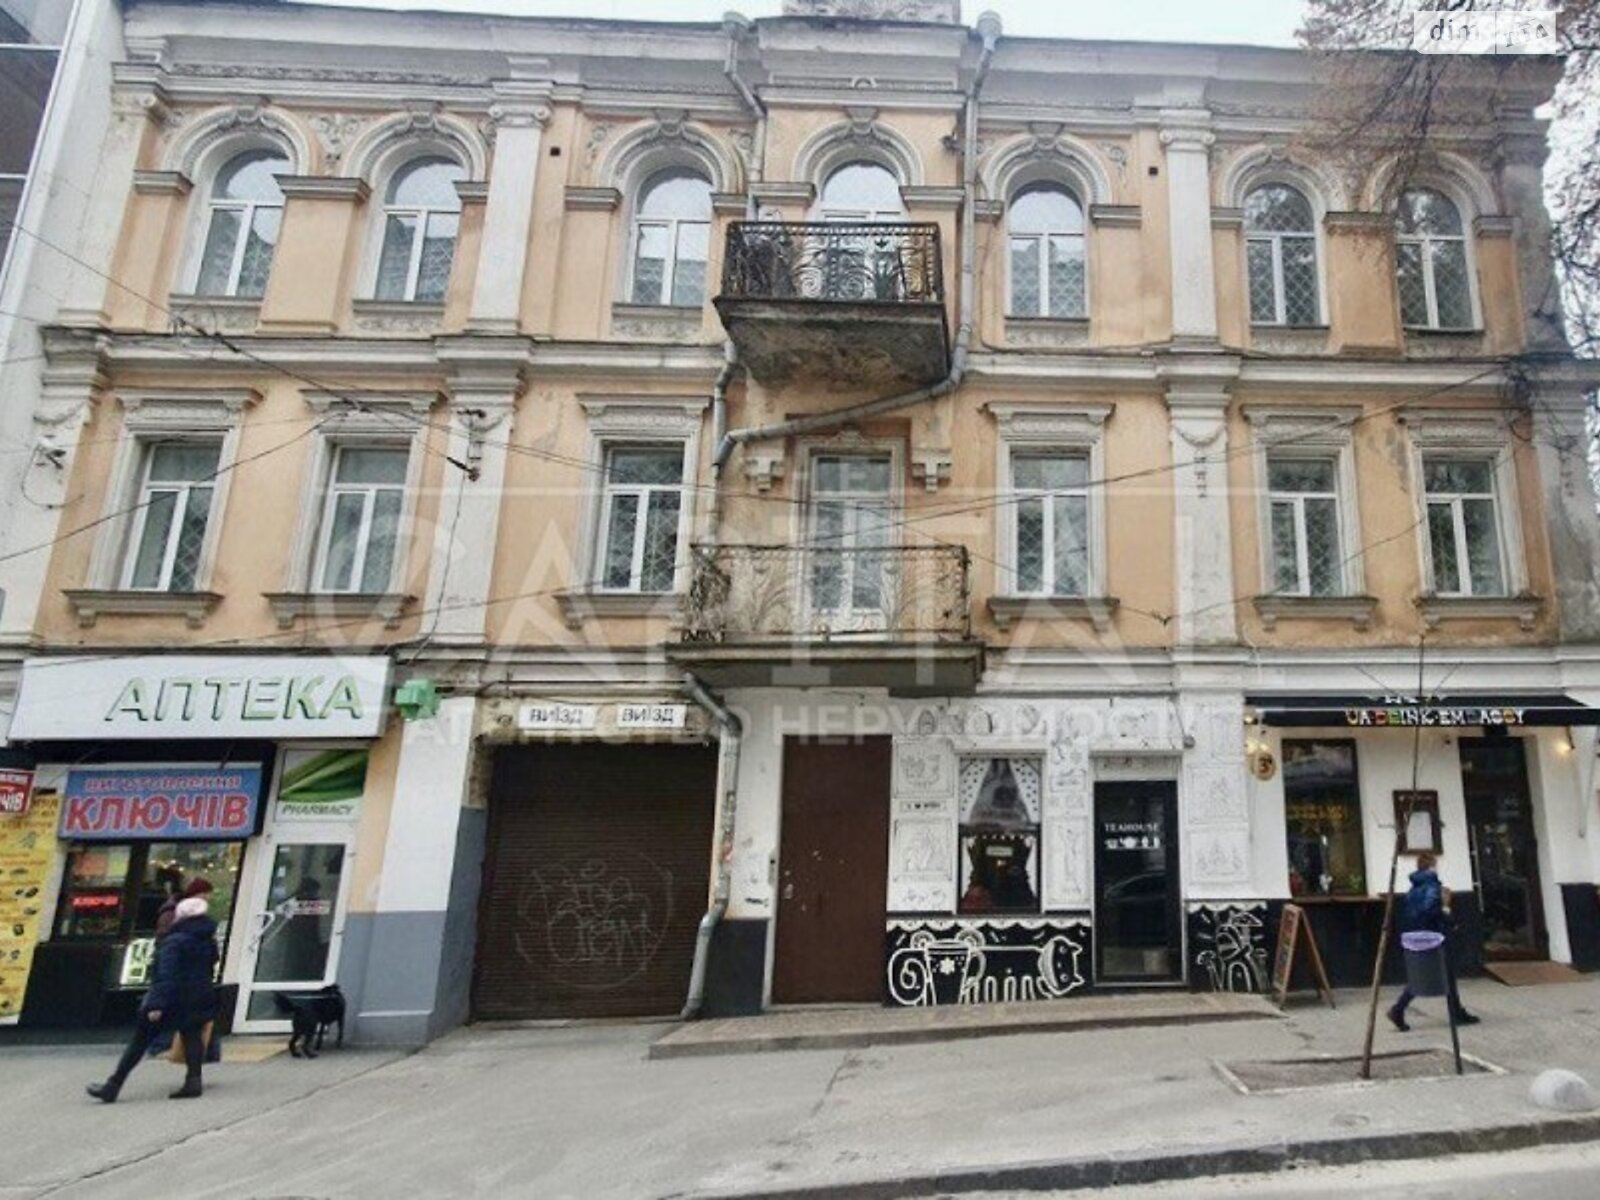 Аренда офисного помещения в Киеве, Софиевская улица 3, помещений - 10, этаж - 2 фото 1